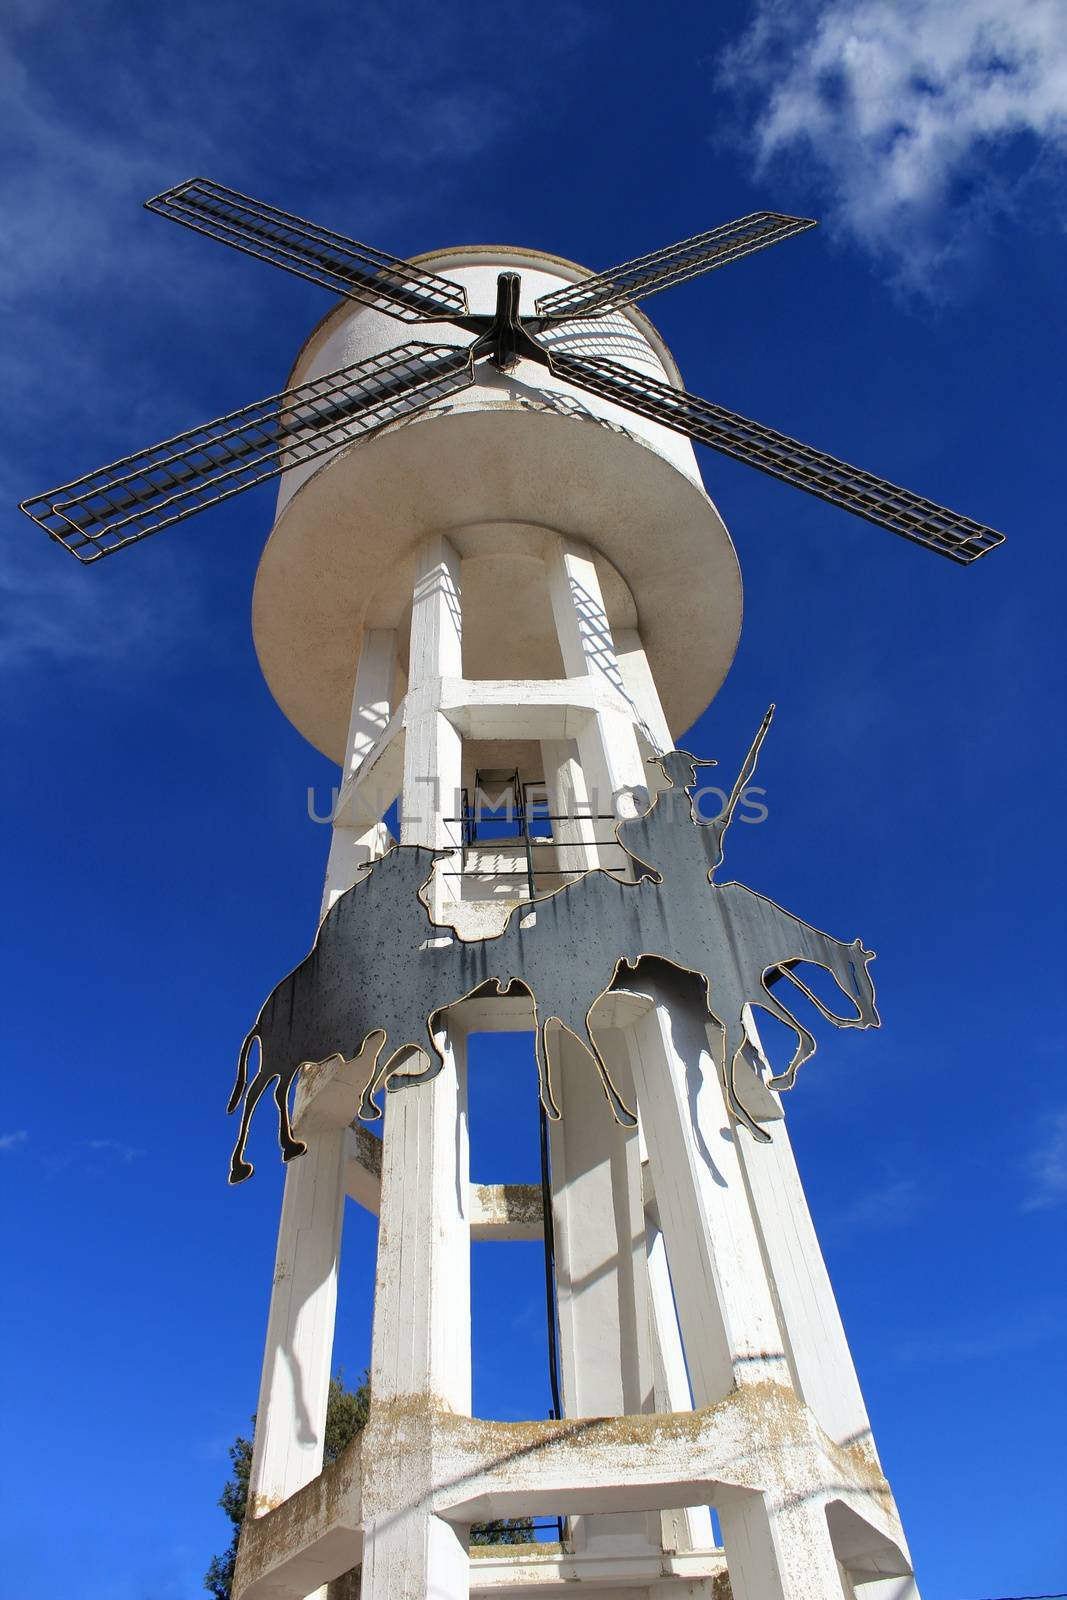 Water tank shaped like a windmill under blue sky by soniabonet